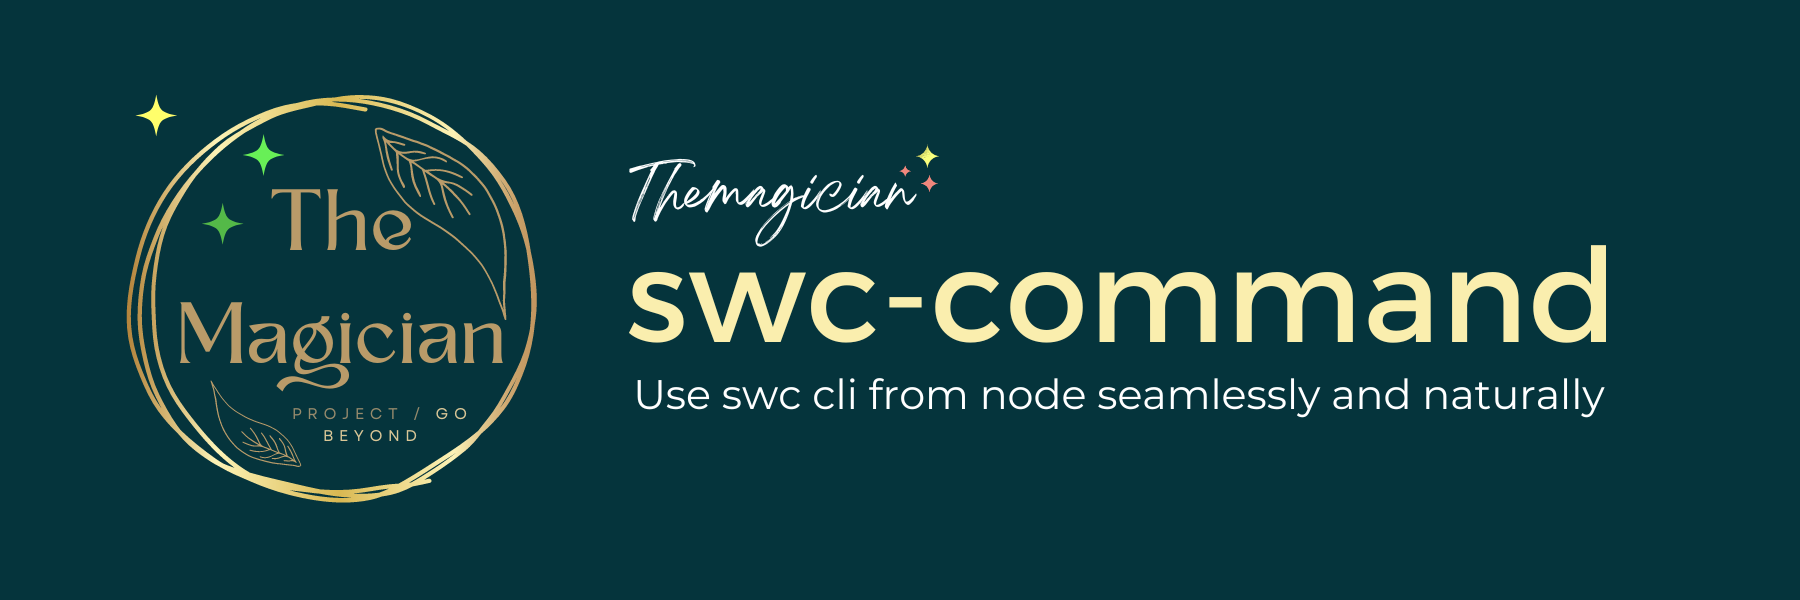 swc command cli node api banner